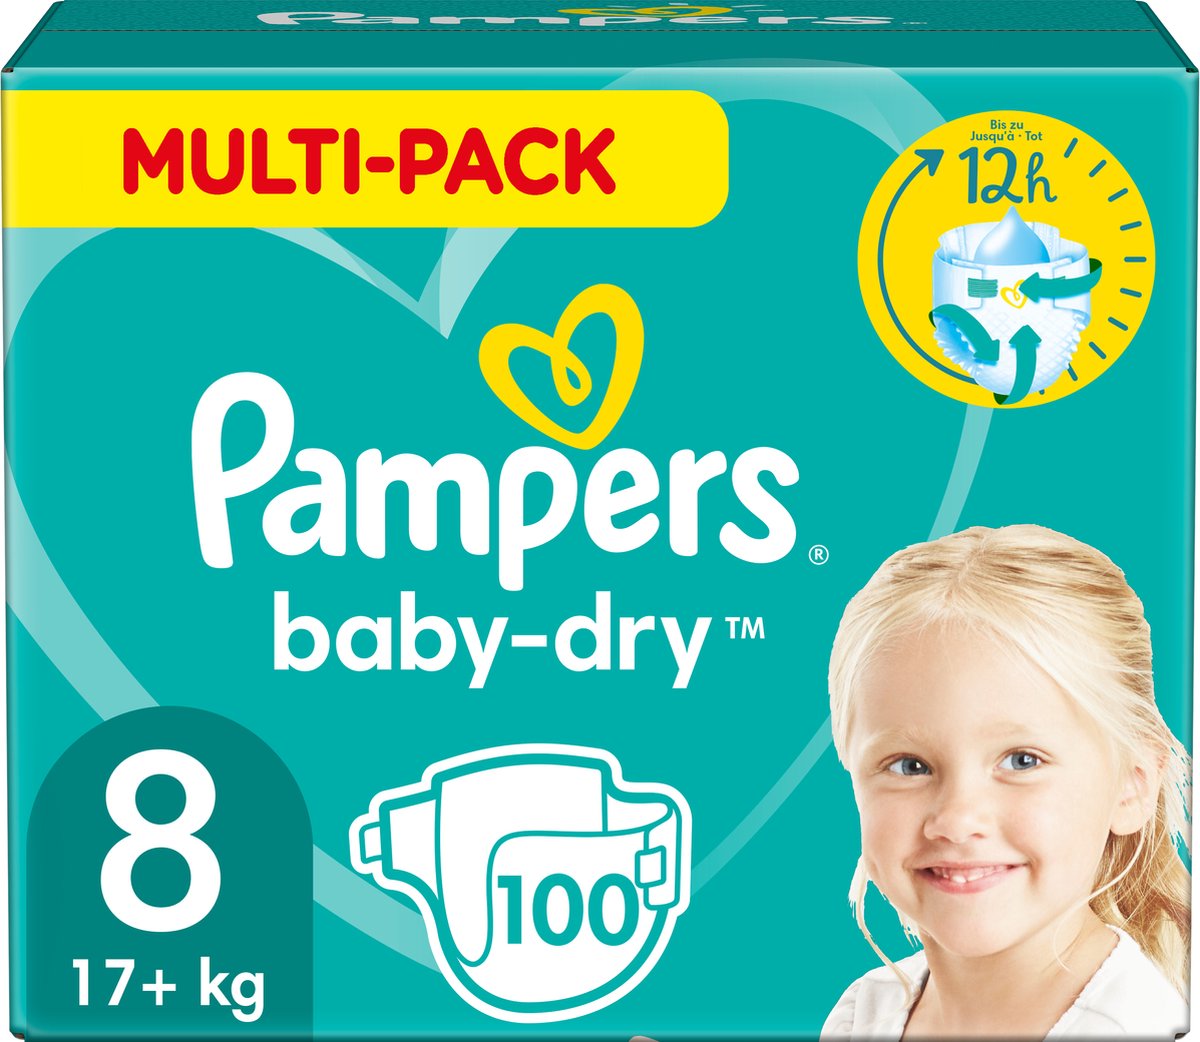 Pampers Baby Dry Luiers Maat 8 (17 kg+) 100 stuks - Multi-Pack | bol.com